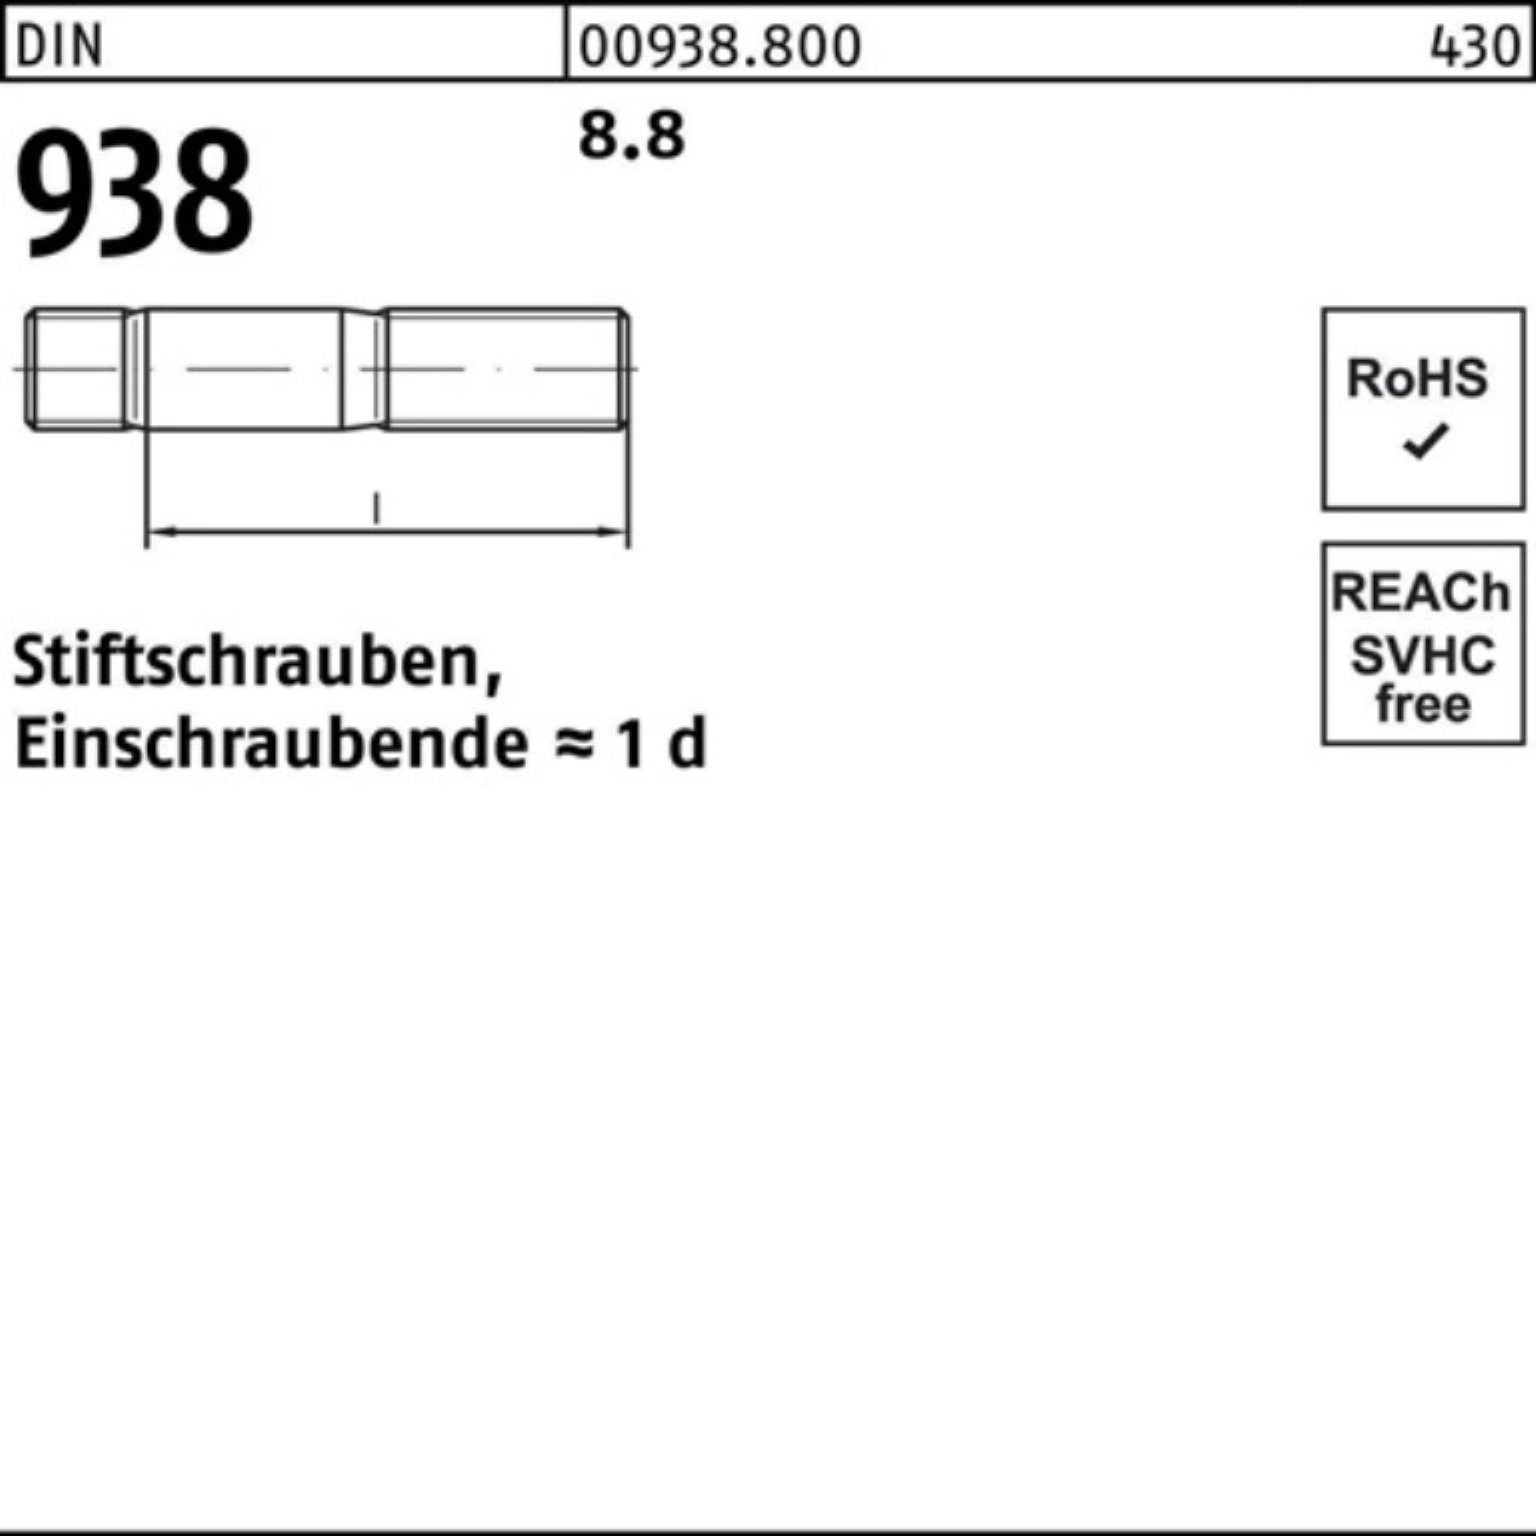 Reyher Stiftschraube 100er M16x DIN Stück 25 40 938 Stiftschraube Sti 8.8 DIN Pack 8.8 938